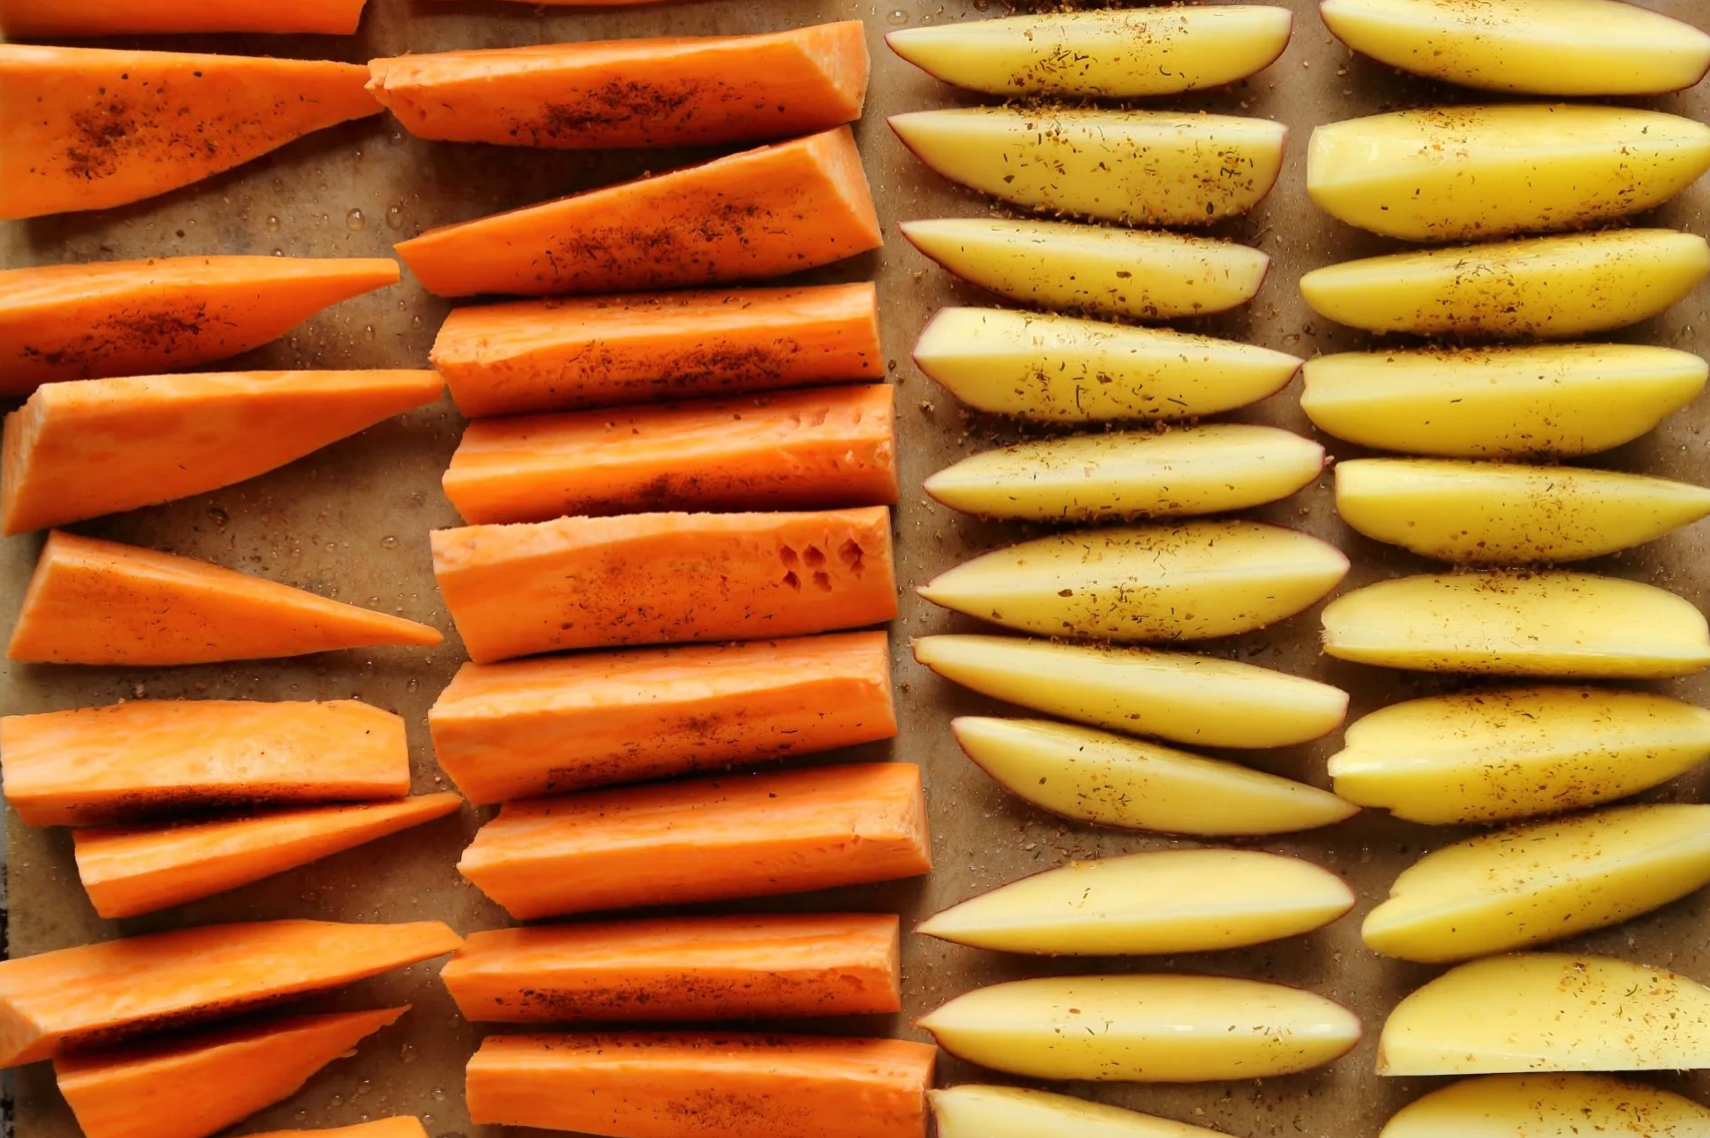 Is sweet potato healthier for you than a regular white potato?